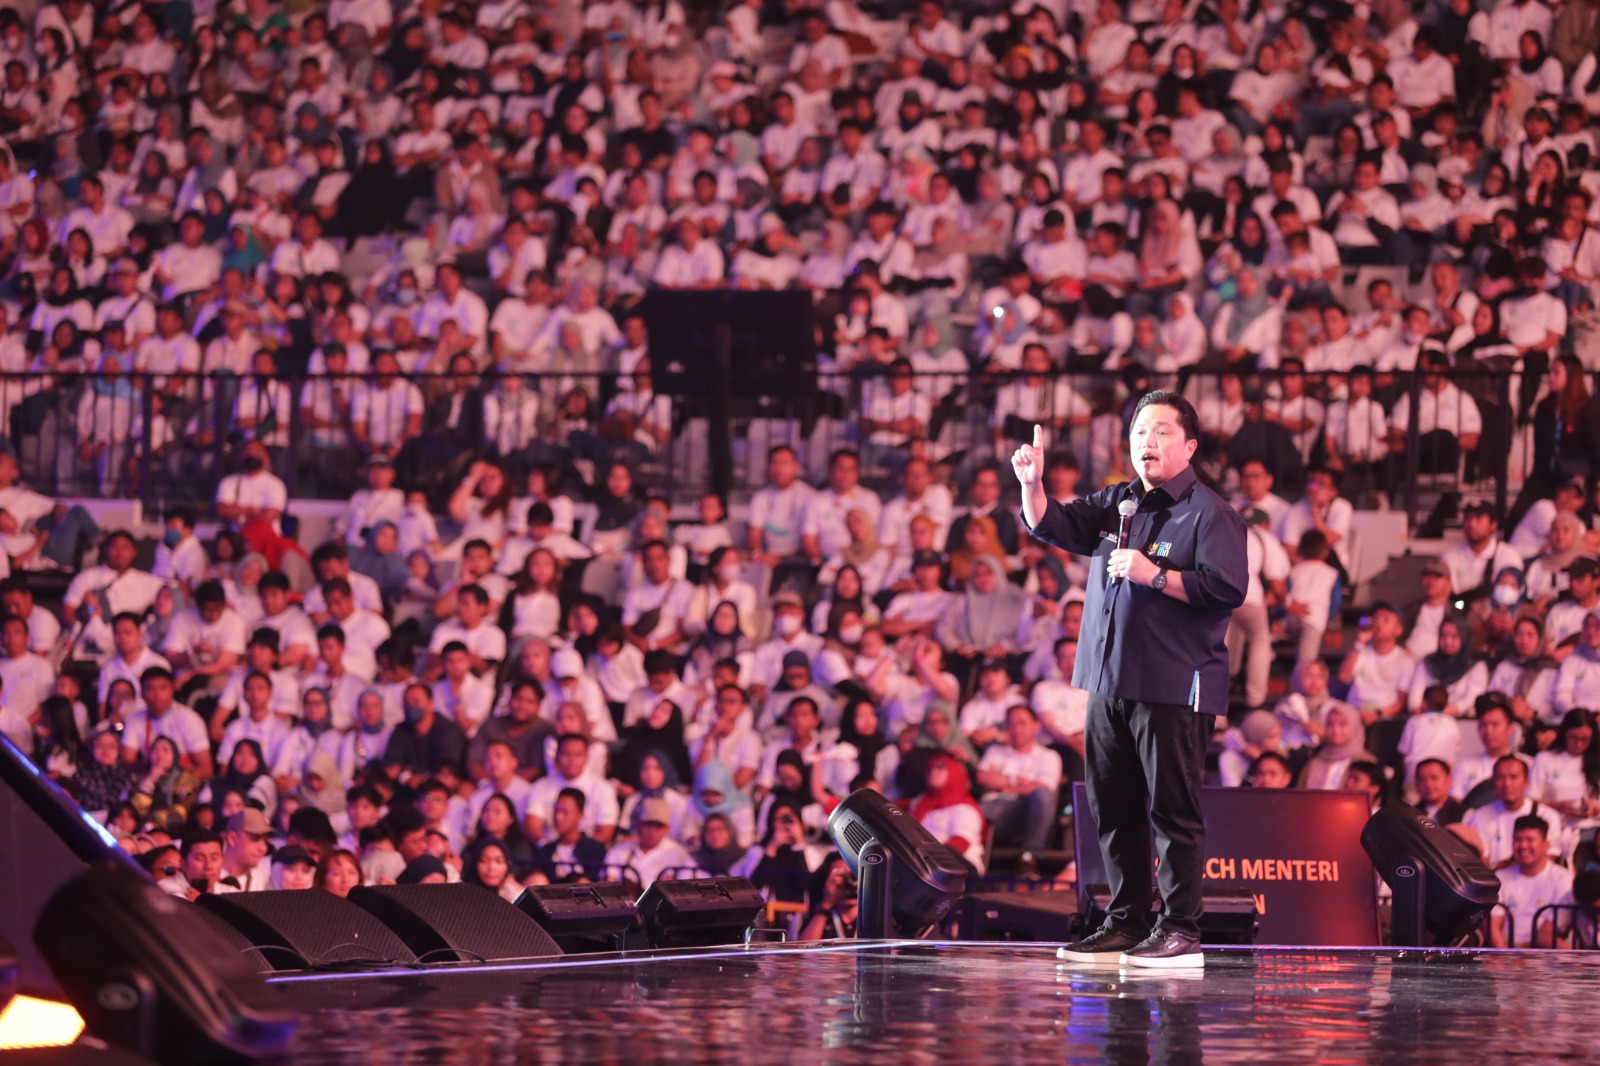 Menteri Badan Usaha Milik Negara, Erick Thohir saat menyampaikan sambutan di hadapan belasan ribu pegawai pada acara Festival HLN di Indonesia Arena, Jakarta, Sabtu (4/11).